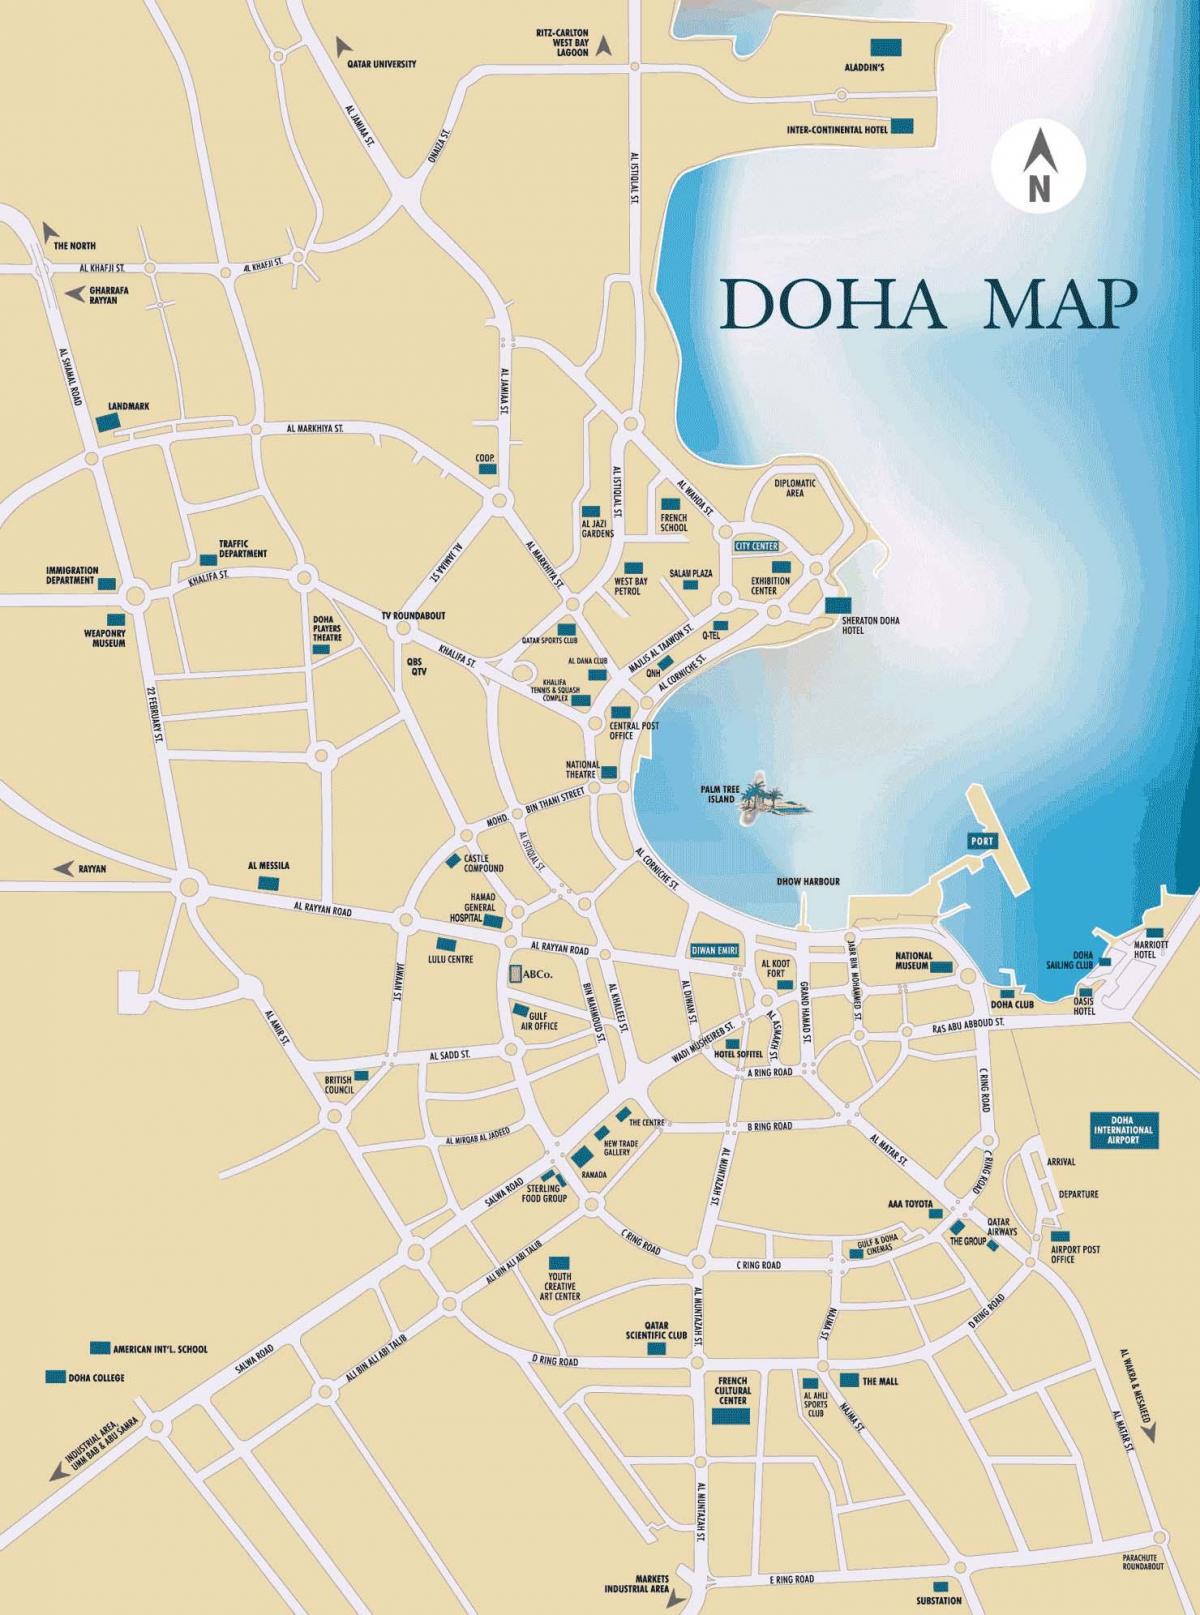 Karte dohā, katarā